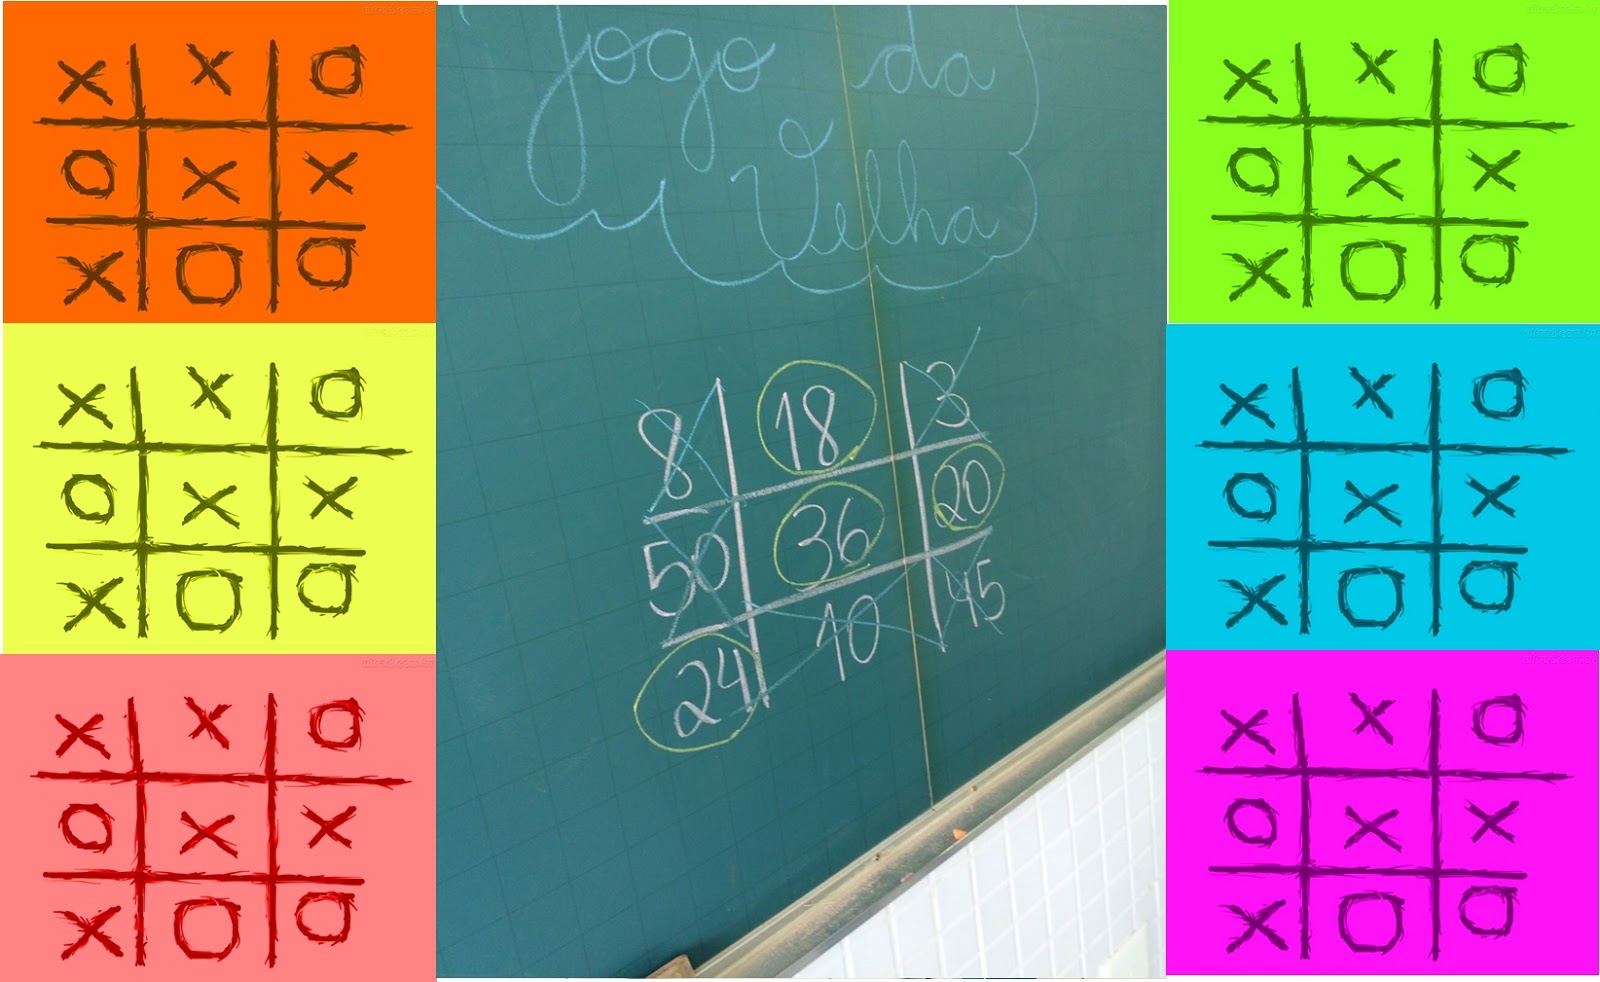 Velha da multiplicação  Jogo da velha, Multiplicação, Jogos educativos  matemática